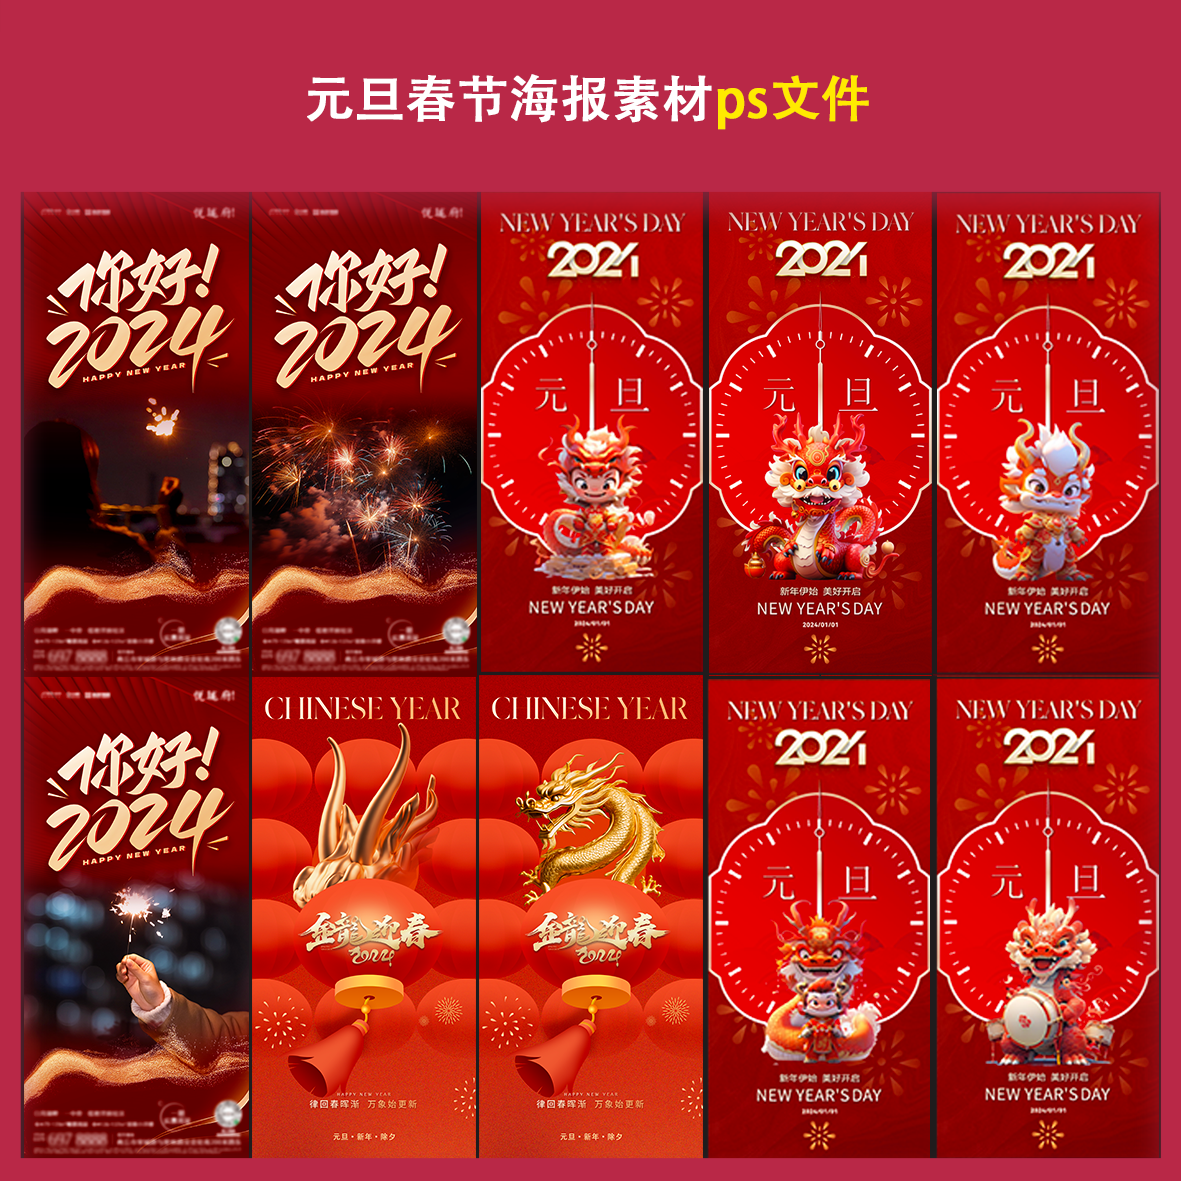 元旦春节海报素材ps文件3d手绘龙烟花时钟倒计时新年春节宣传配图